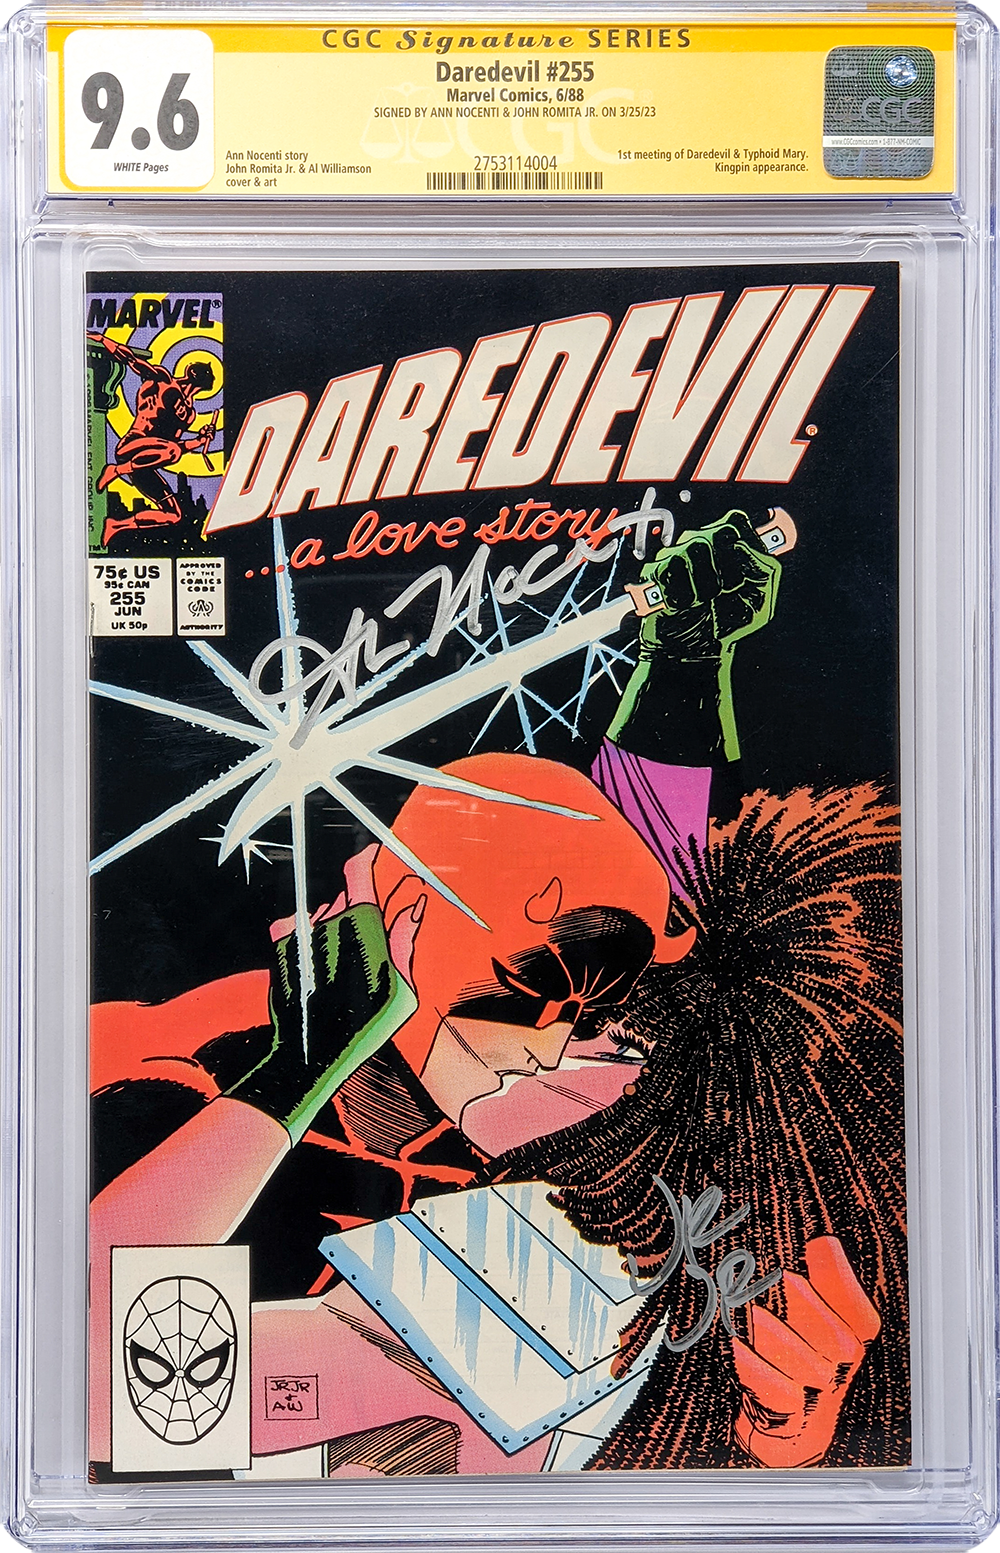 Marvel Comics Daredevil #255 CGC Signature Series 9.6 Signed Nocenti Romita Jr